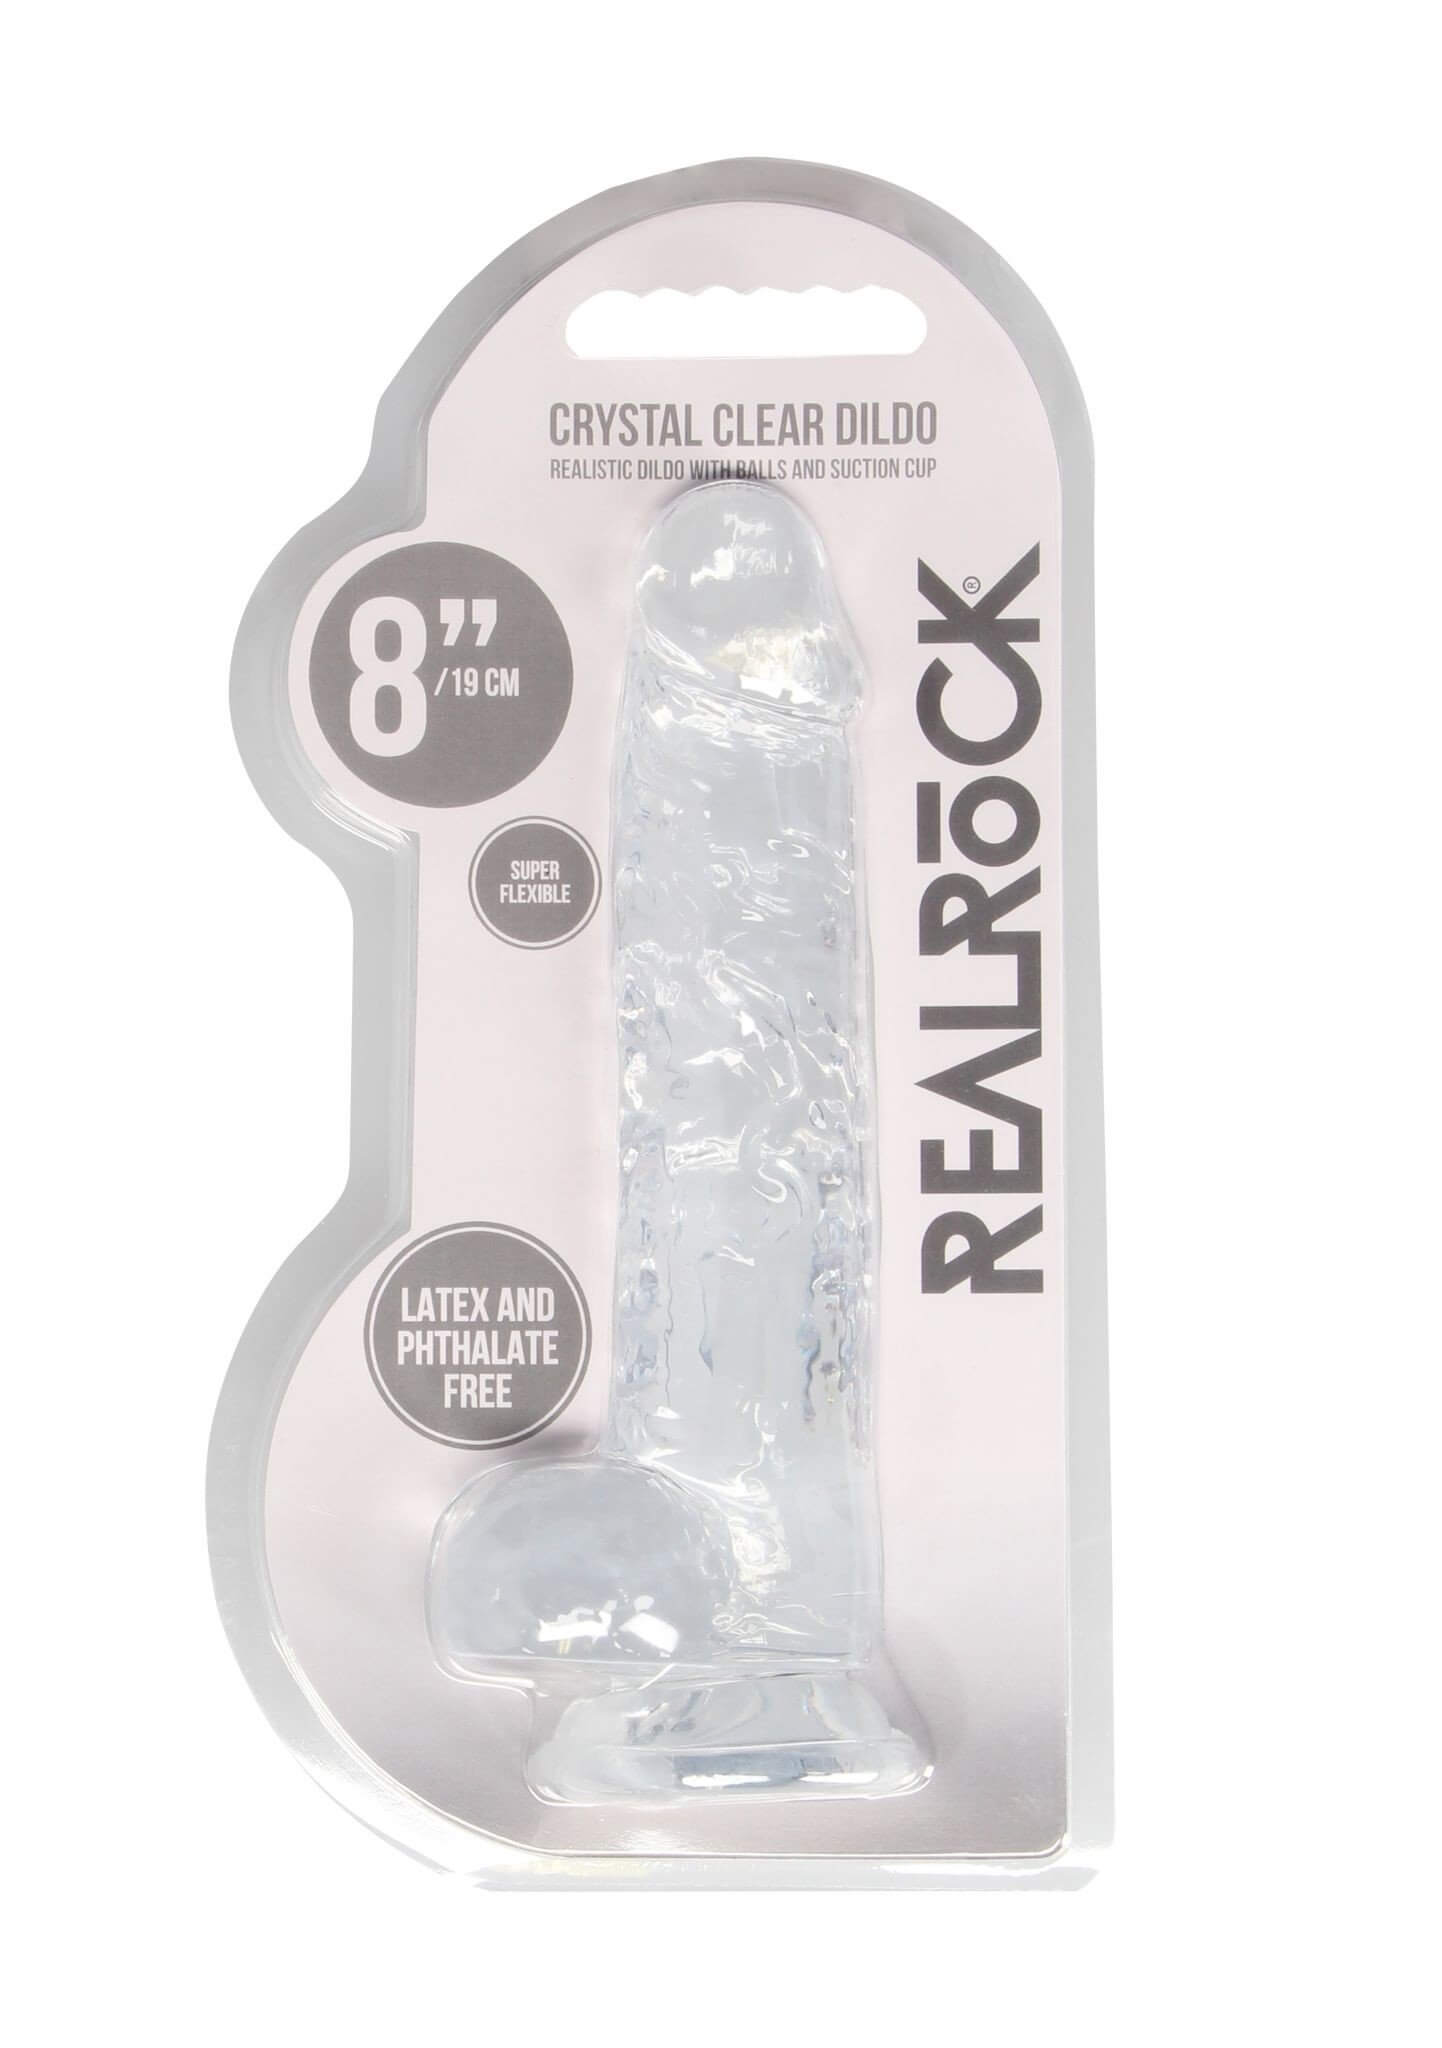 REALROCK CRYSTAL CLEAR DILDO 20CM CLEAR